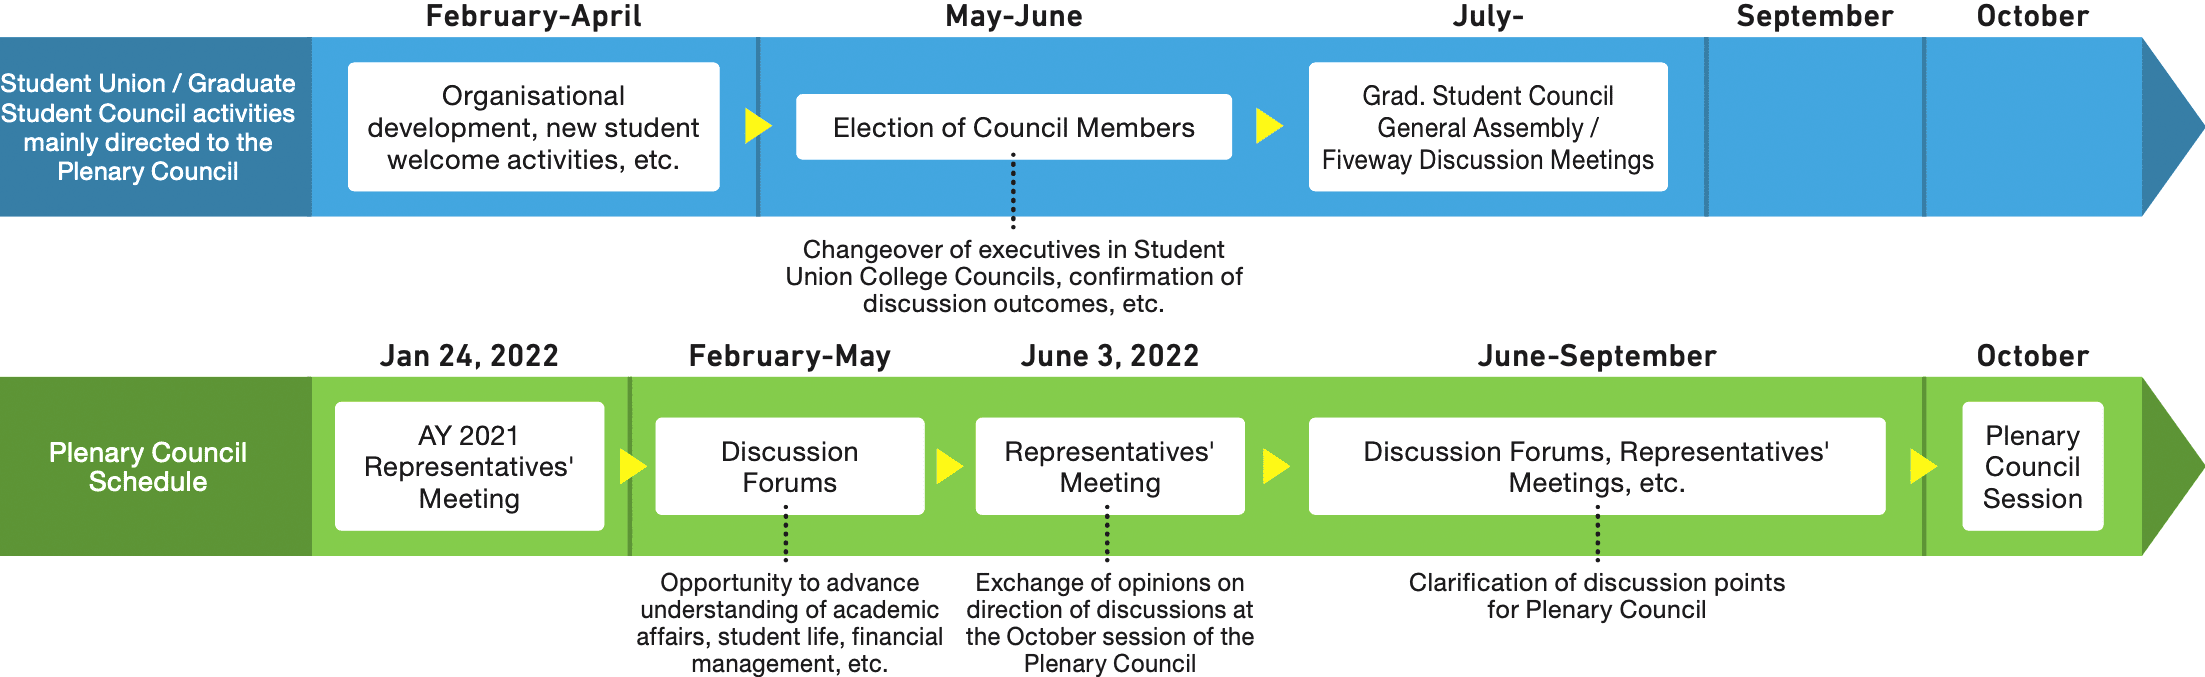 AY 2022 Plenary Council Schedule